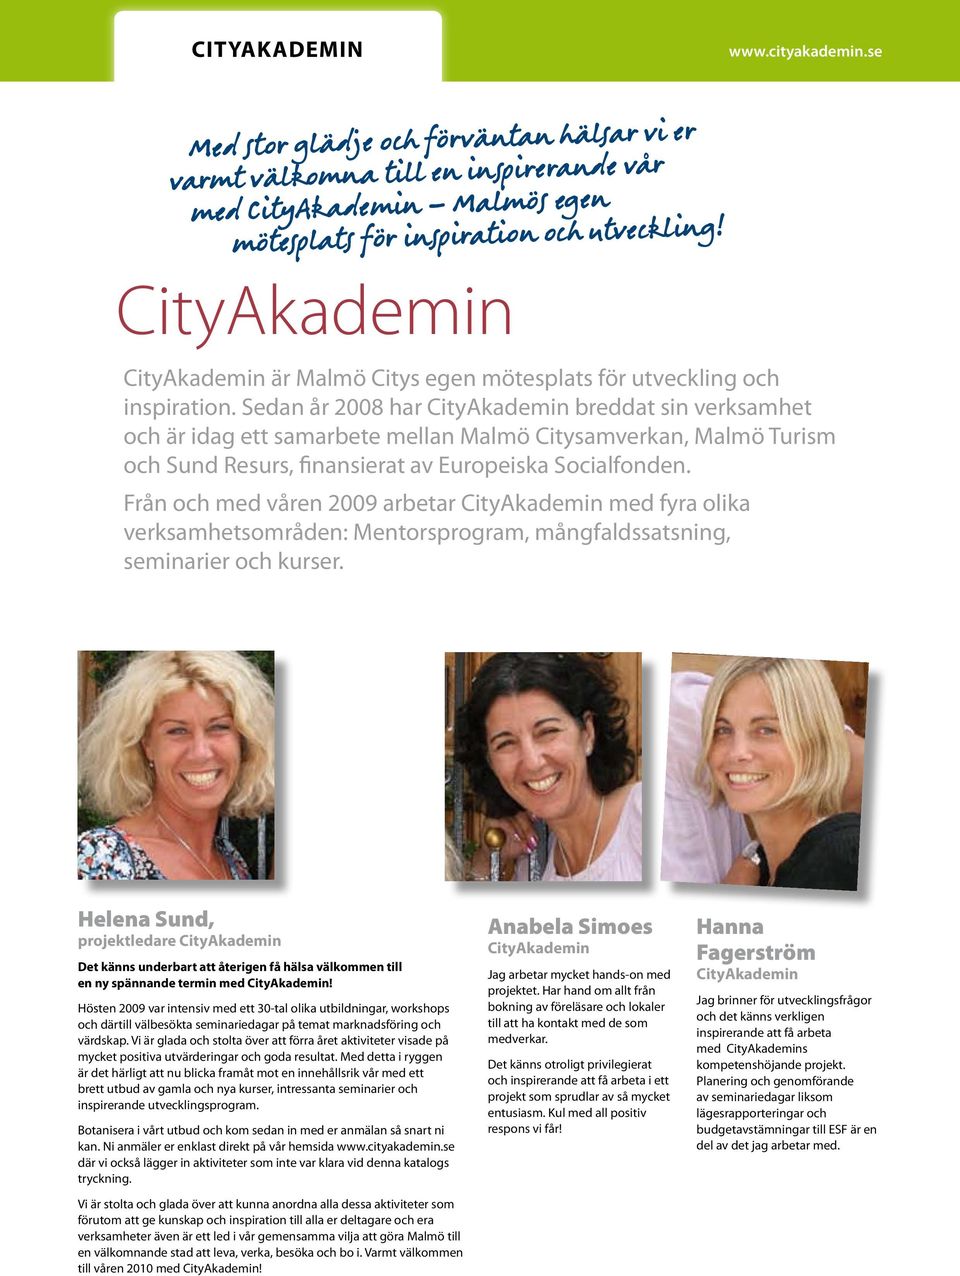 Sedan år 2008 har CityAkademin breddat sin verksamhet och är idag ett samarbete mellan Malmö Citysamverkan, Malmö Turism och Sund Resurs, finansierat av Europeiska Socialfonden.